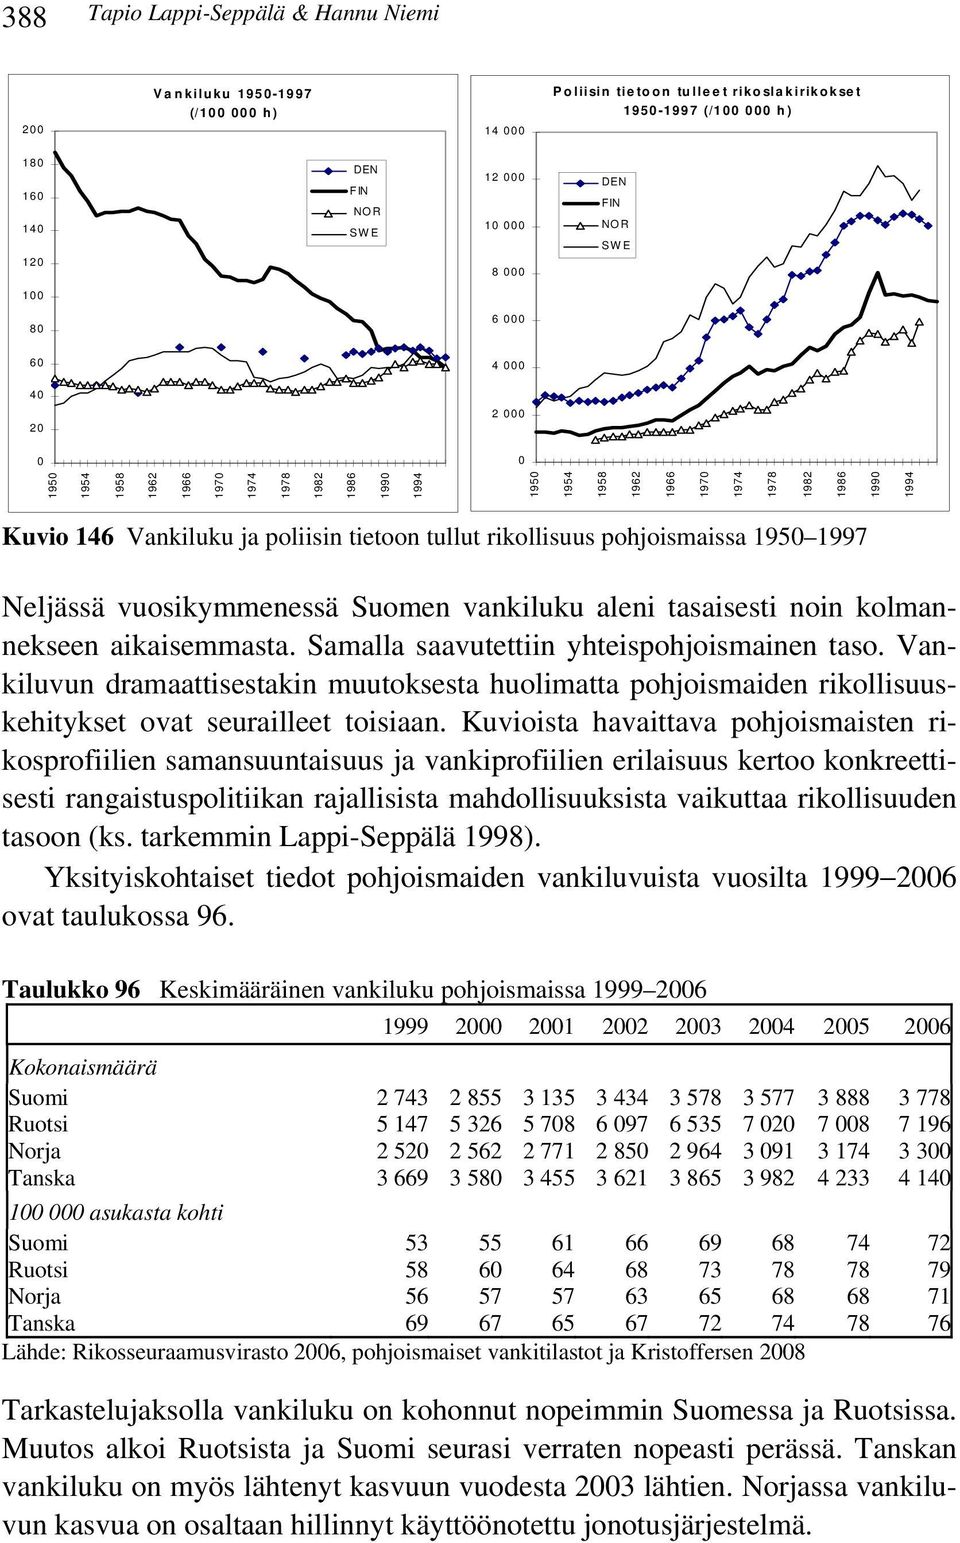 Neljässä vuosikymmenessä Suomen vankiluku aleni tasaisesti noin kolmannekseen aikaisemmasta. Samalla saavutettiin yhteispohjoismainen taso.